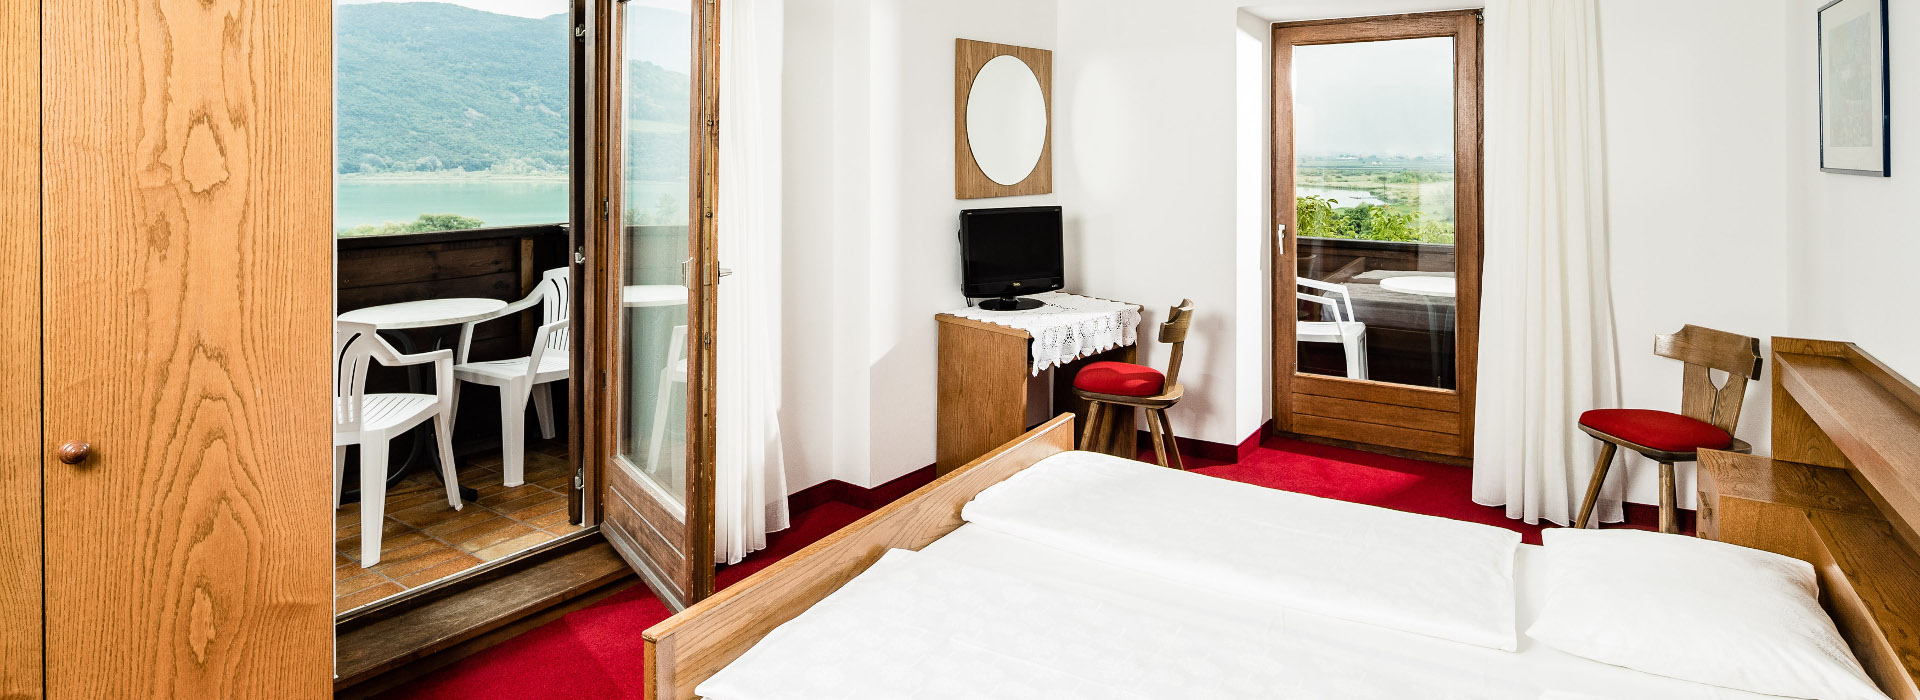 Zimmer mit Seeblick im Hasslhof Hotel Kaltern am See